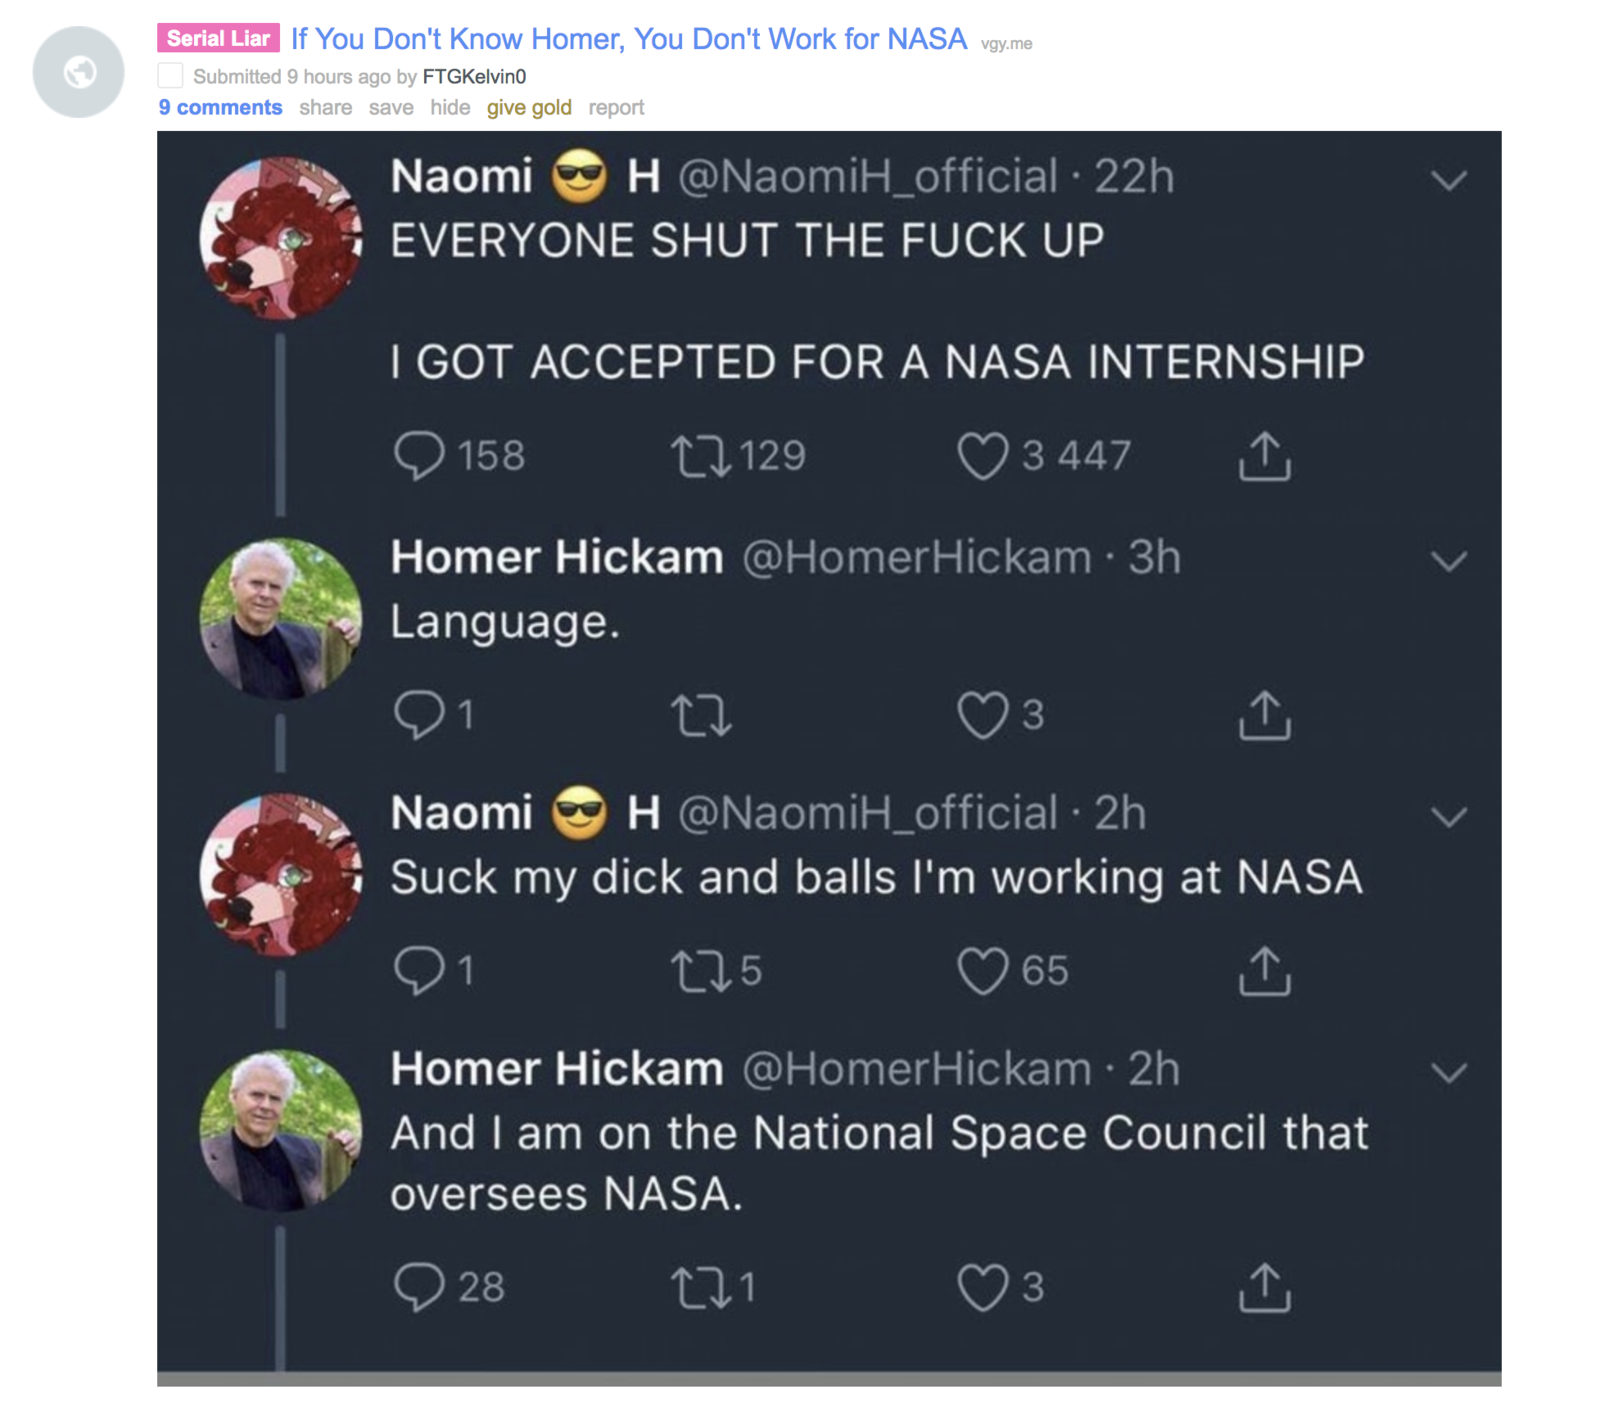 Suck my dick and balls nasa internship